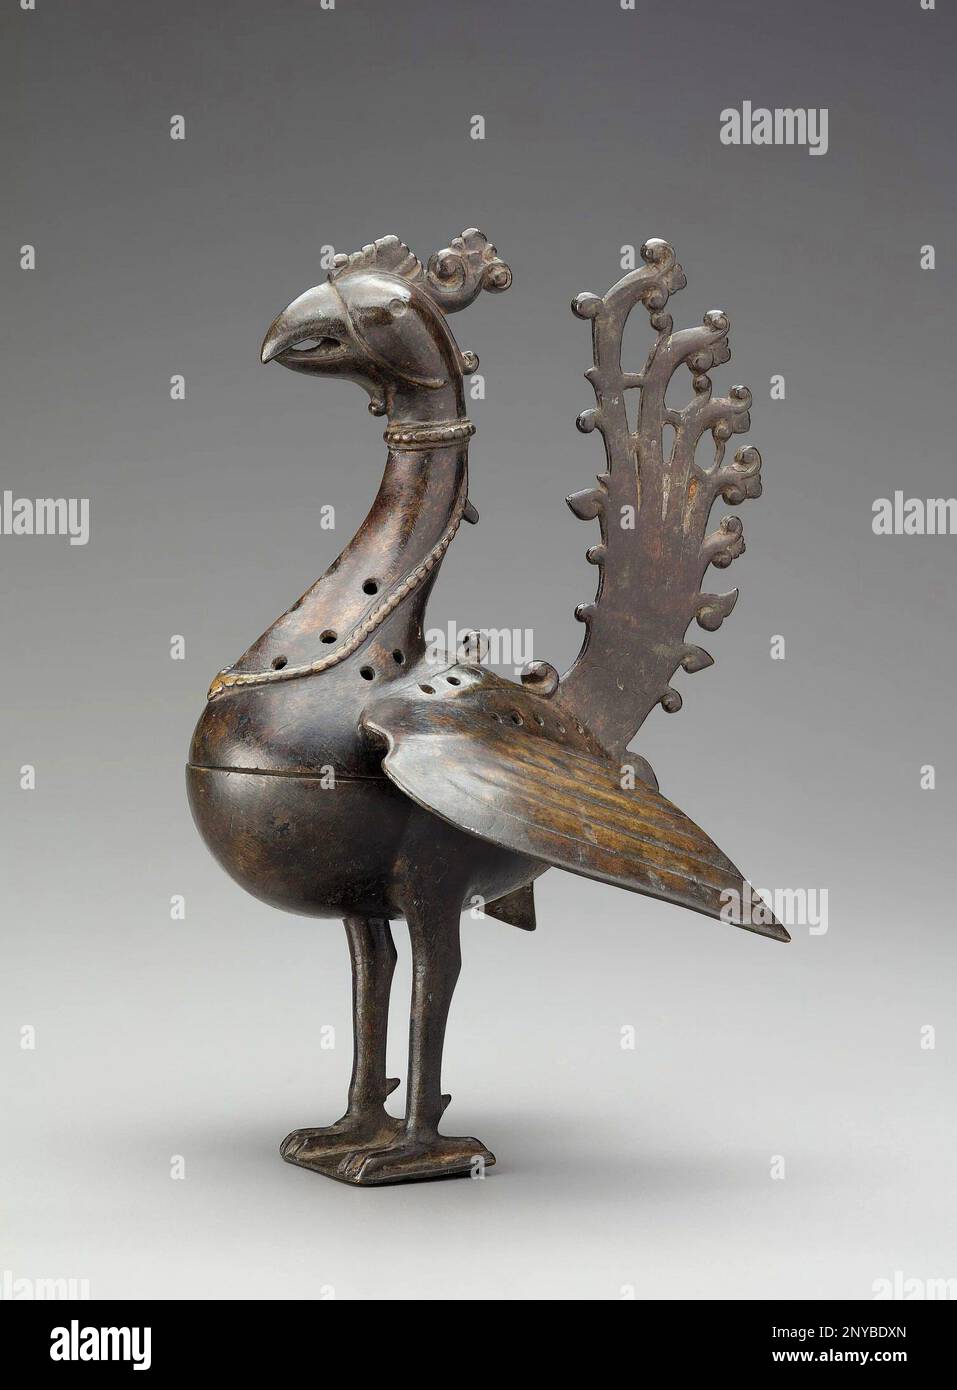 Peacock-förmiger Incense Brenner, Ende des 15. Bis Mitte des 16. Jahrhunderts. Indischer Messing. Dieser Pfauenförmige Räucherbrenner ist ein feines und seltenes Beispiel für Metallarbeiten Stockfoto